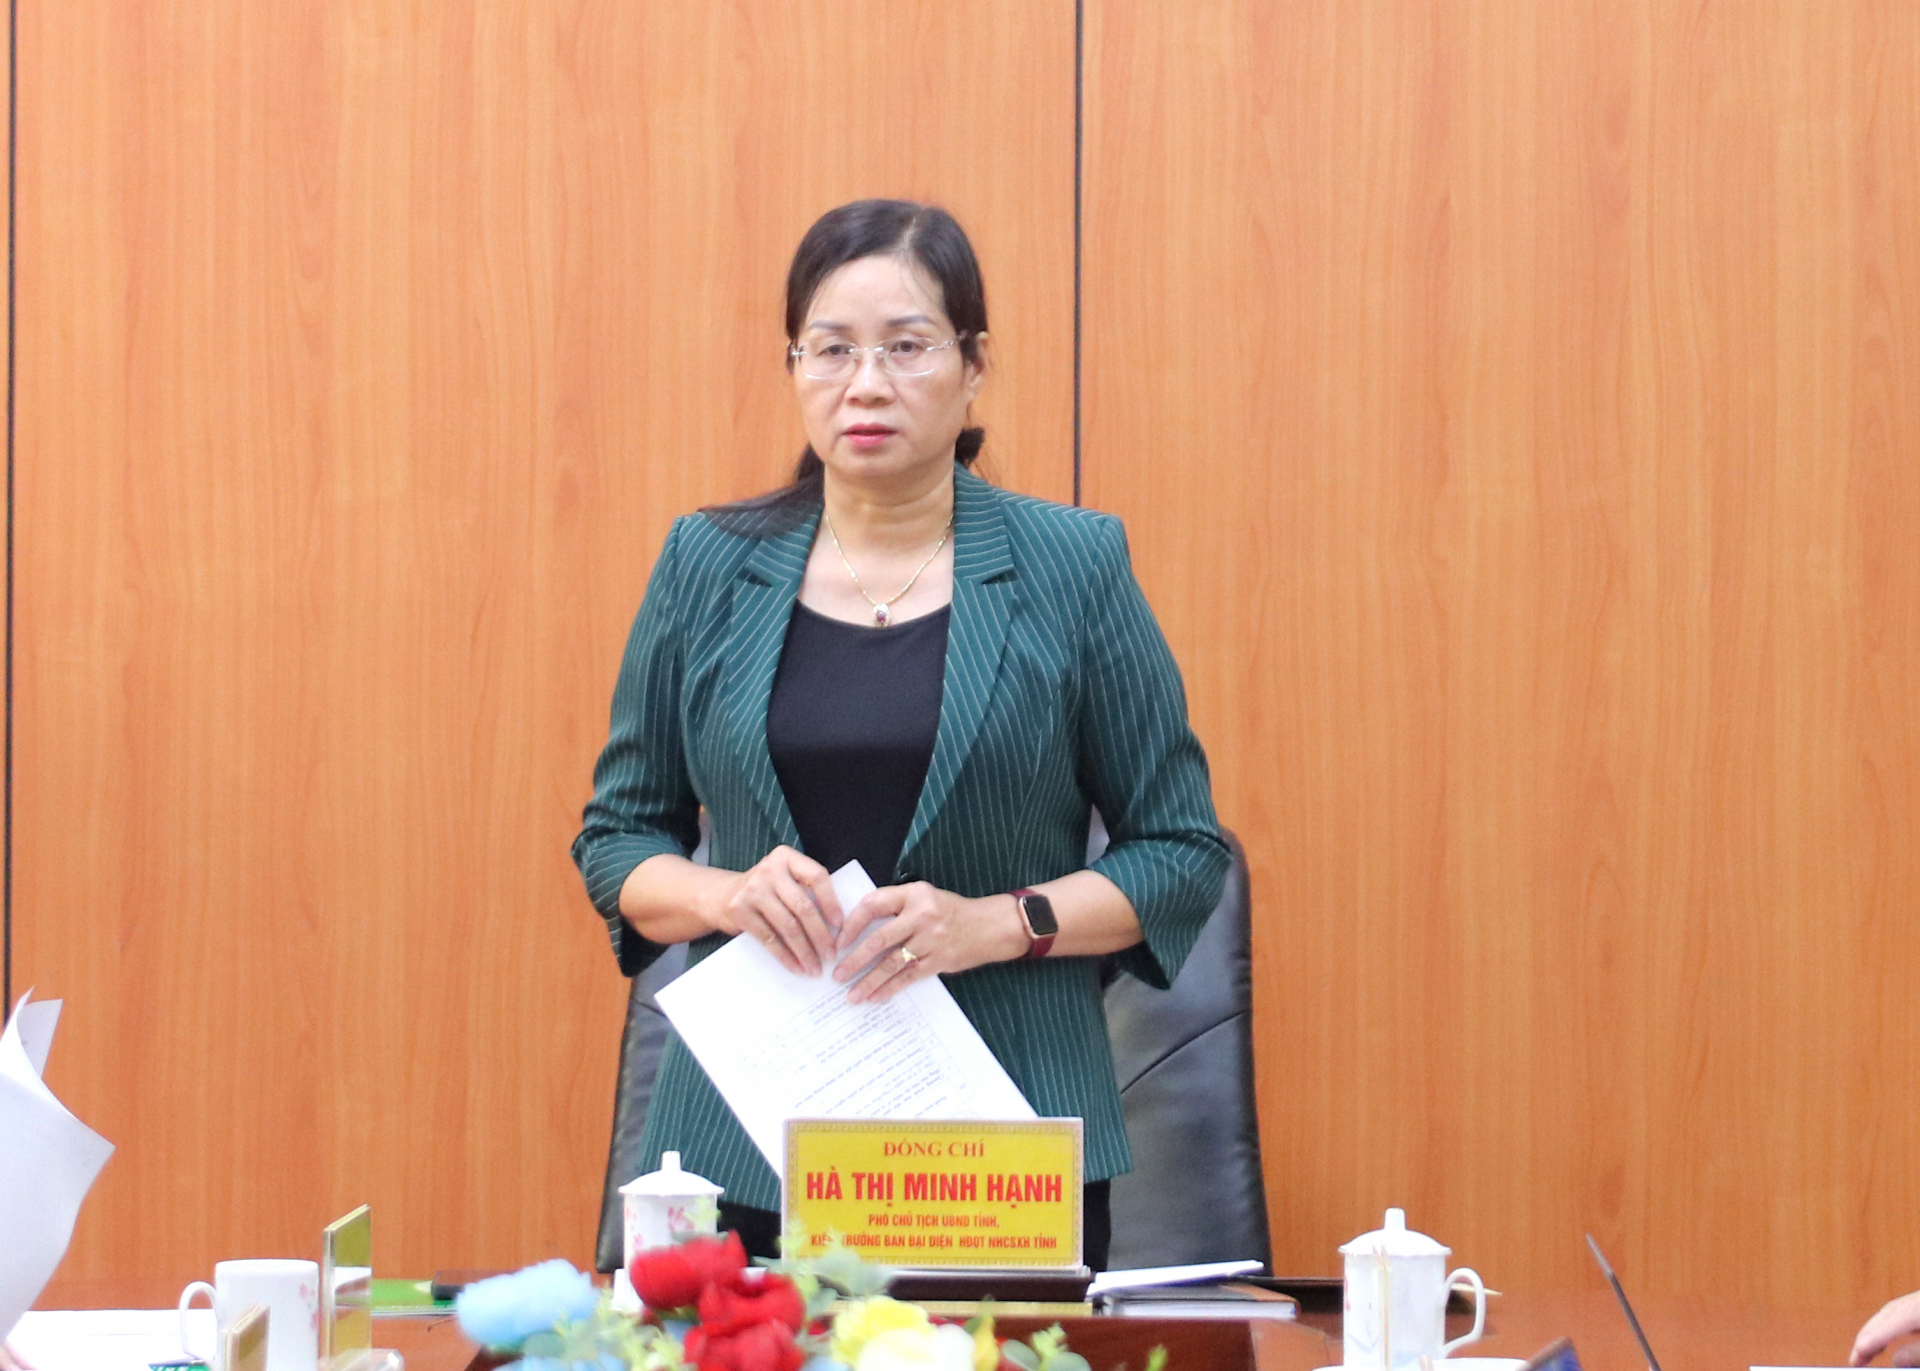 Phó Chủ tịch UBND tỉnh Hà Thị Minh Hạnh kết luận buổi làm việc.